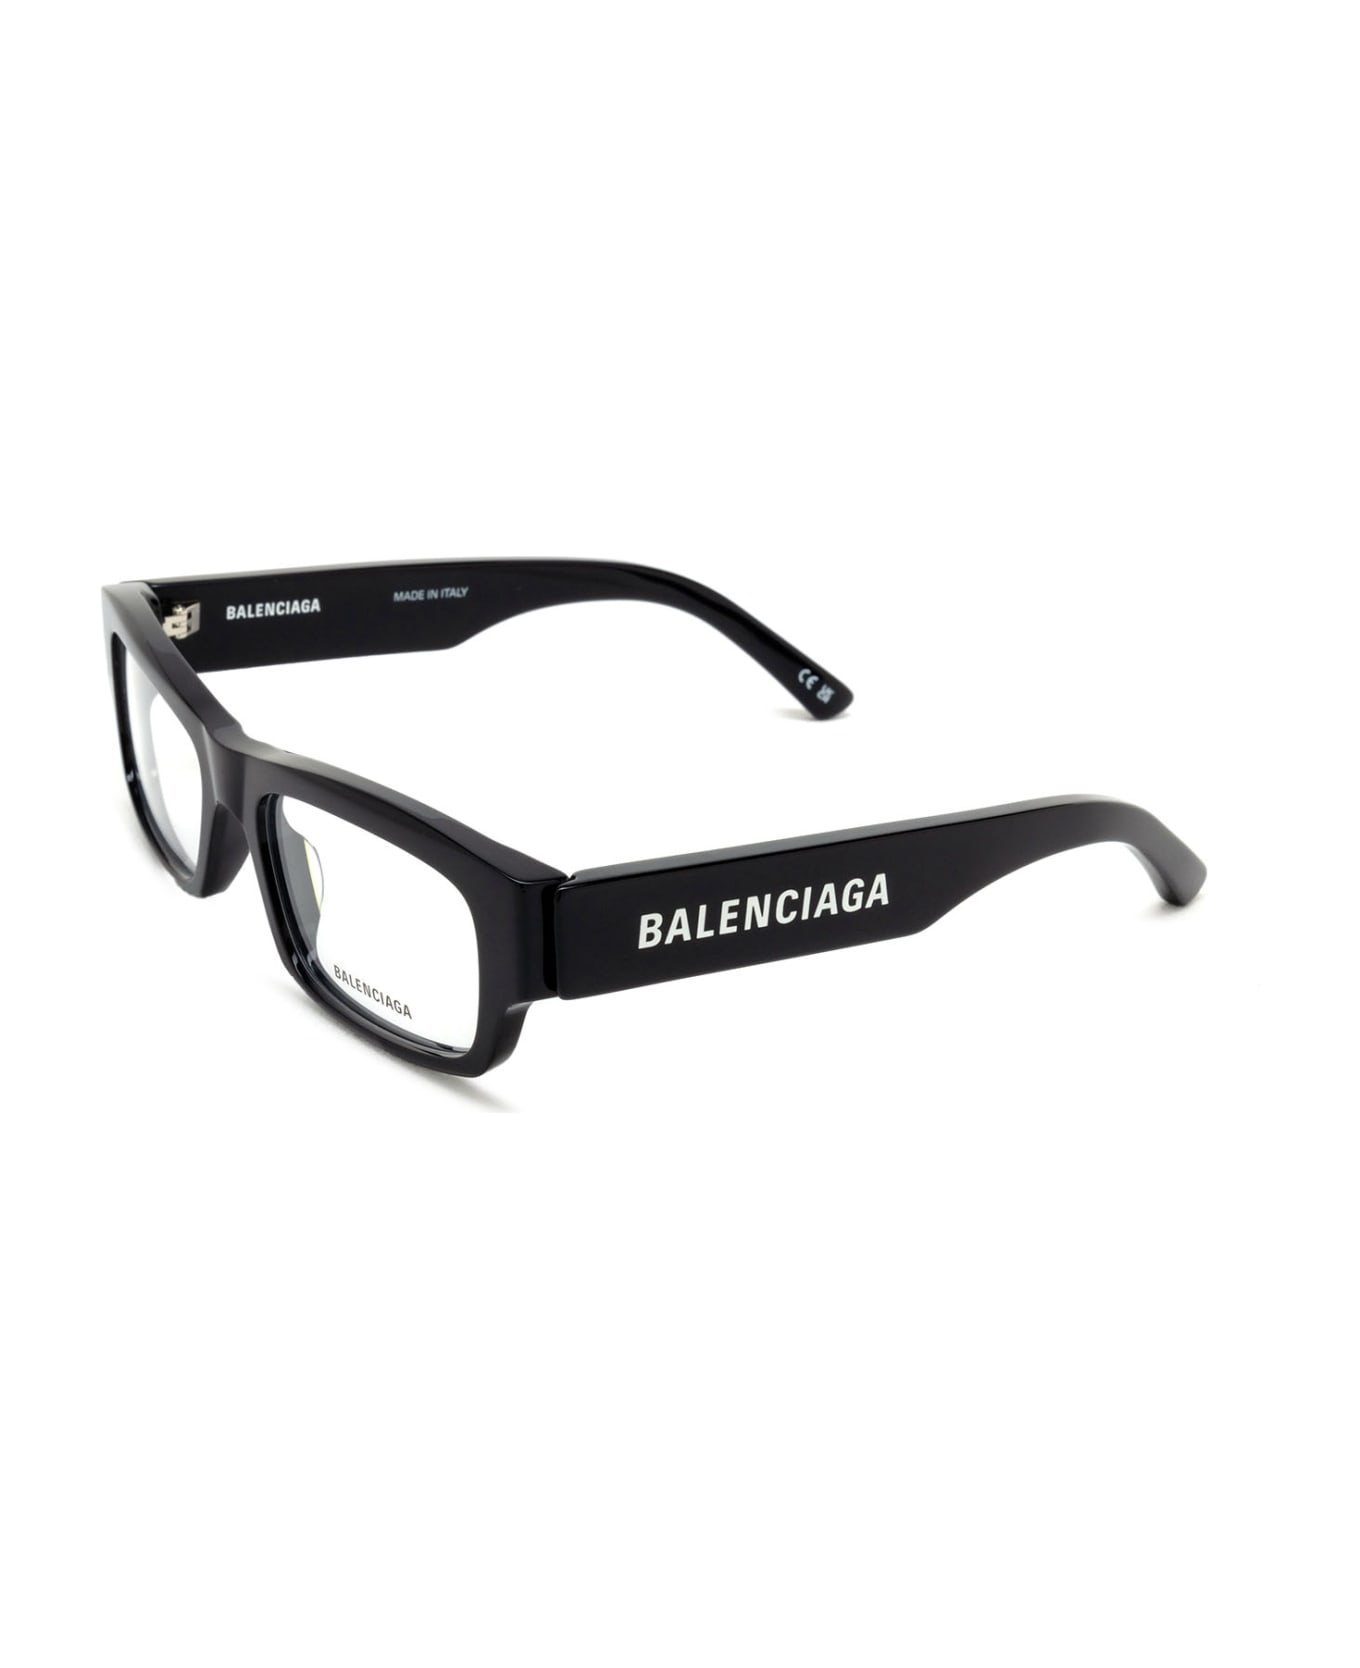 Balenciaga Eyewear Bb0265o Glasses - Black